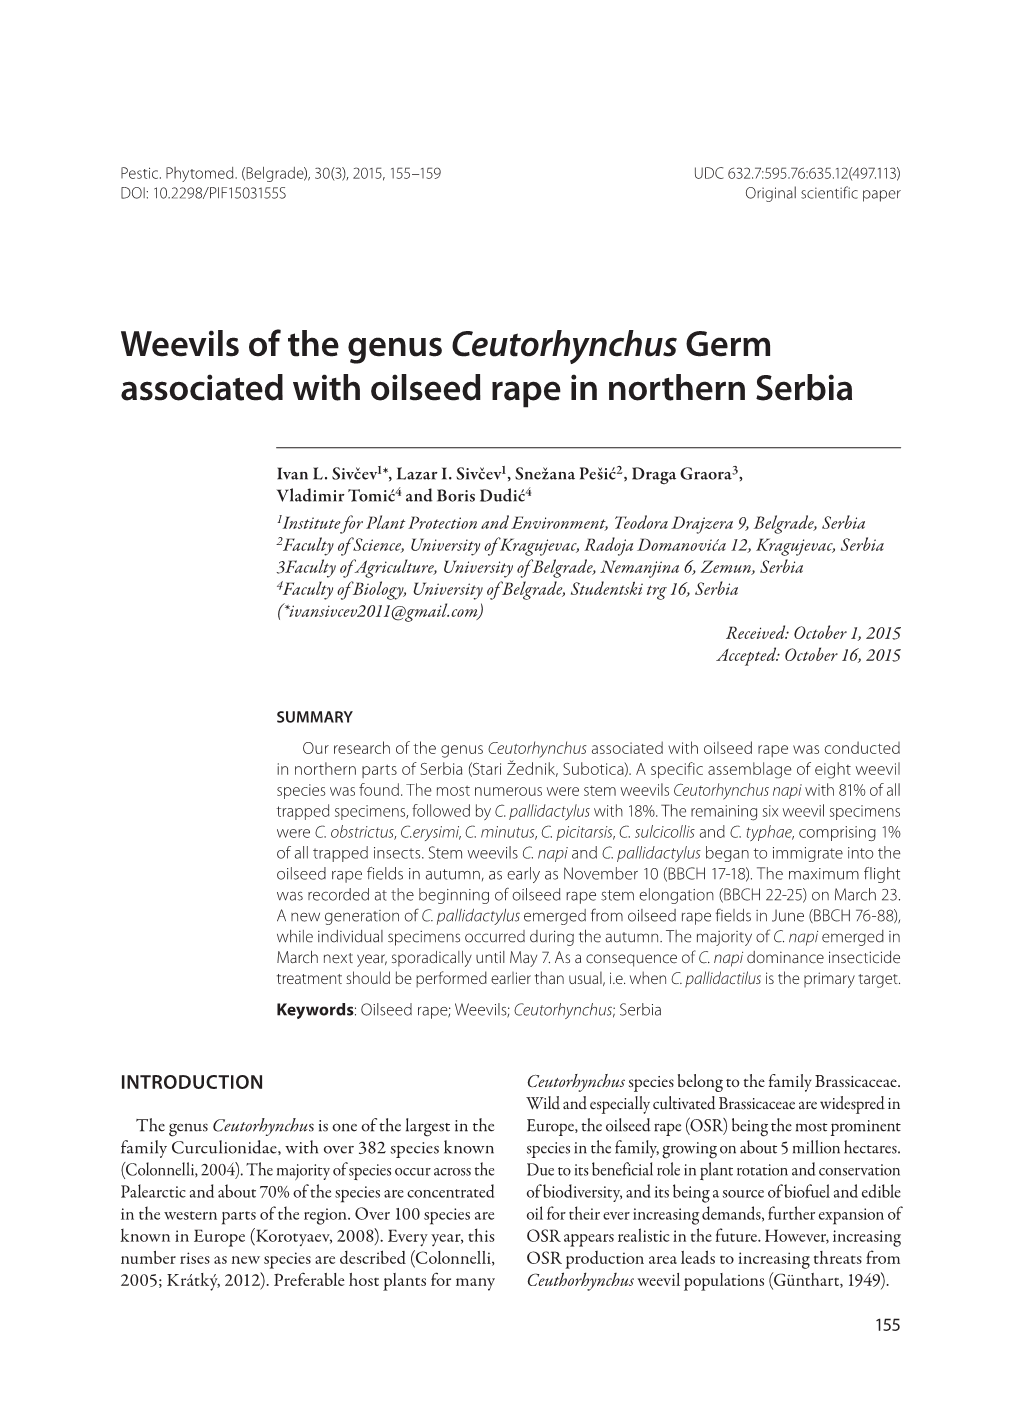 Weevils of the Genus Ceutorhynchus Germ Associated with Oilseed Rape in Northern Serbia